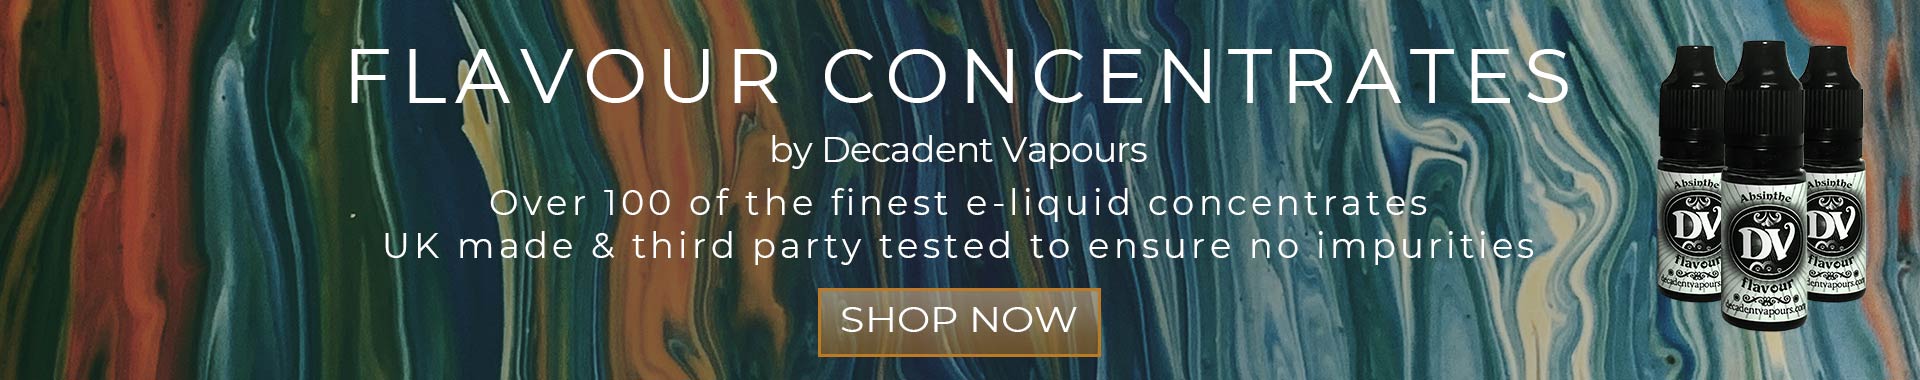 E-Liquid-Flavour-Concentrates-Shop-Now